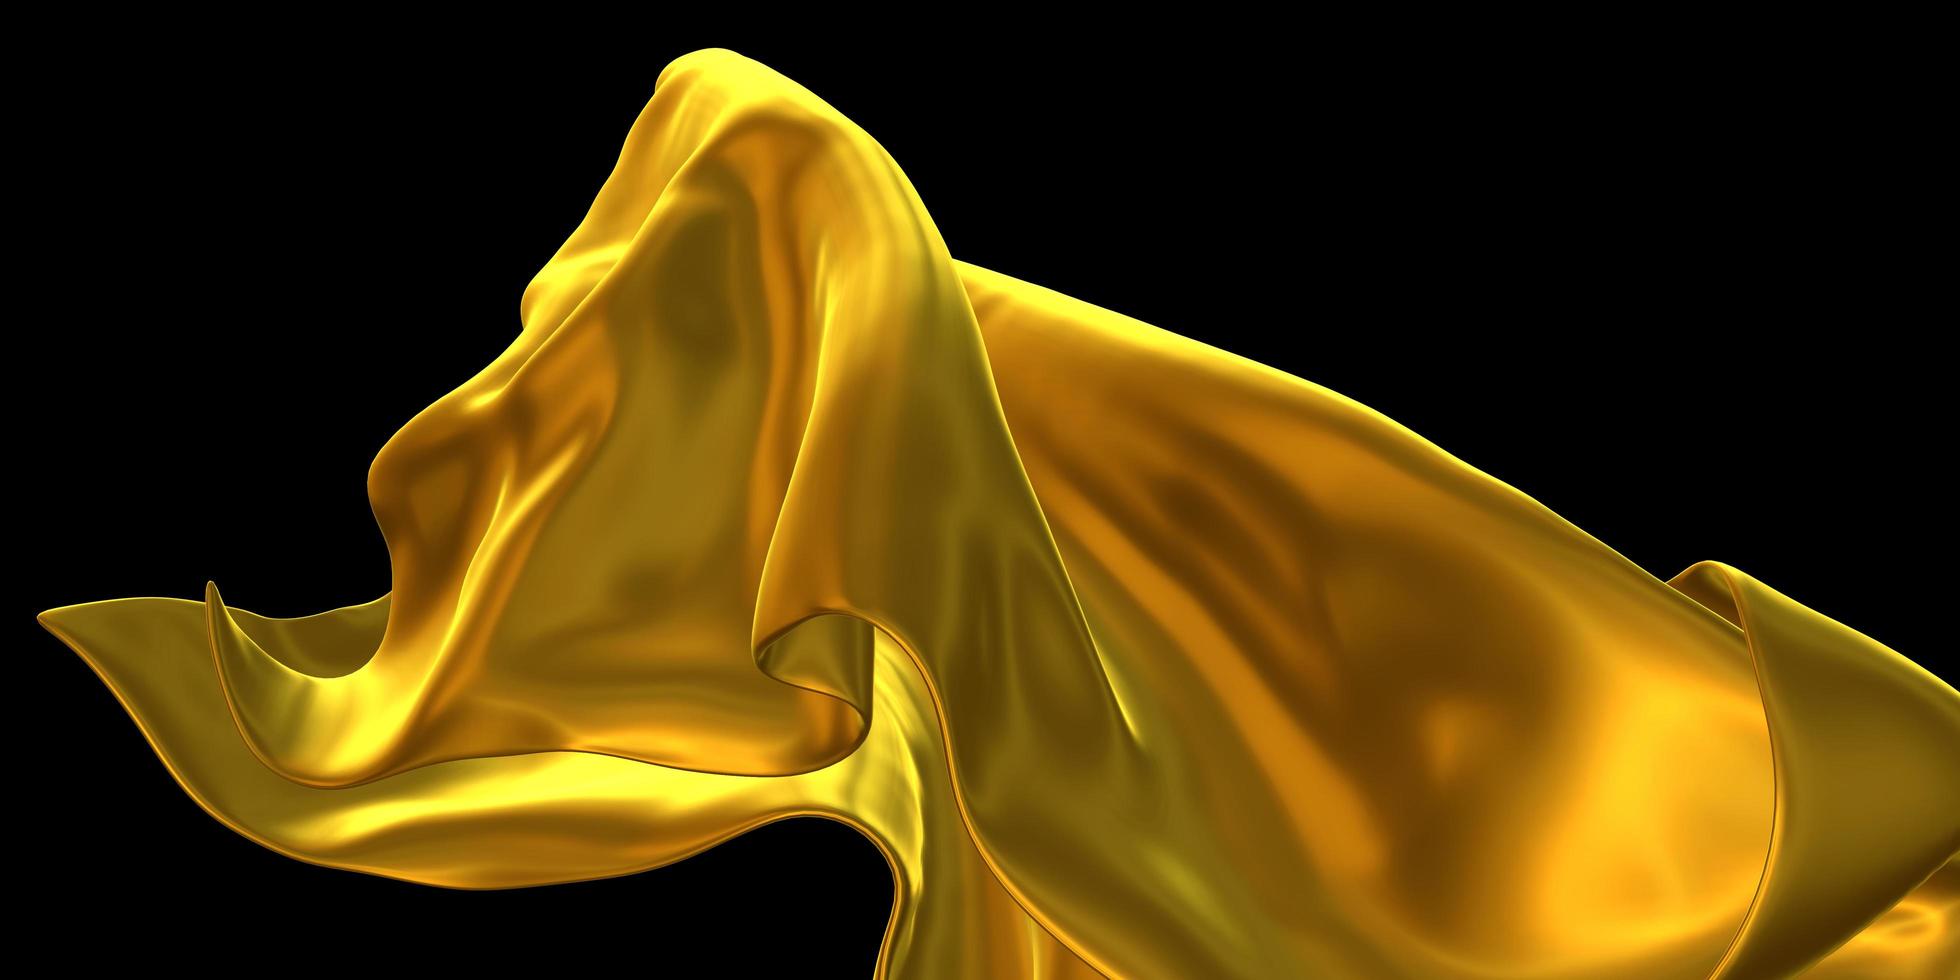 Vải xa hoa đính vàng có thể đưa bạn đến một thế giới sặc sỡ đầy tinh tế và sang trọng. Lá vàng nát trên bề mặt vàng trừu tượng làm tăng thêm sức quyến rũ của nó. Hãy để mắt được sưởi ấm bởi vẻ đẹp đích thực của tác phẩm này và tận hưởng cảm giác cứ như đang đắm mình trong một vũ trụ nghệ thuật đích thực.